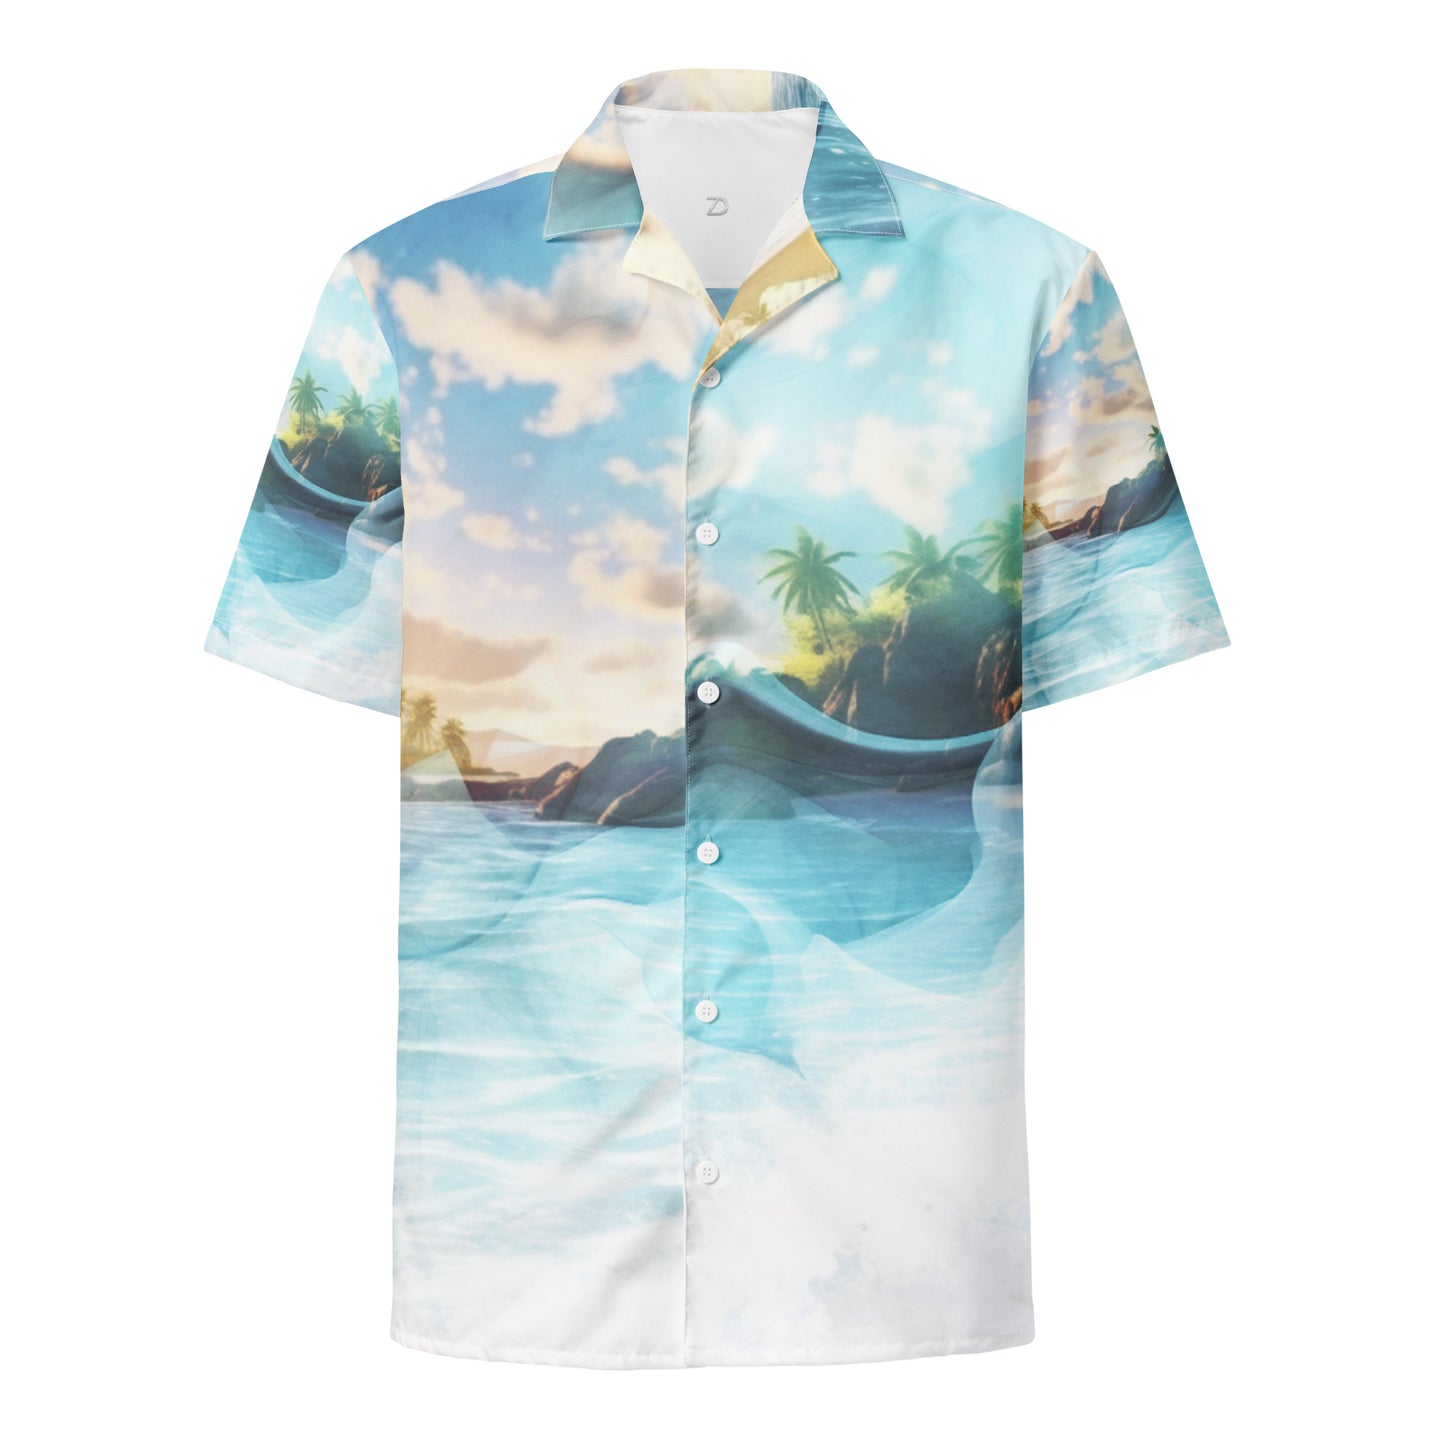 Vivid Dreams Tropical Beach Unisex Button Shirt - Dreamscape Collection by Neduz Designs